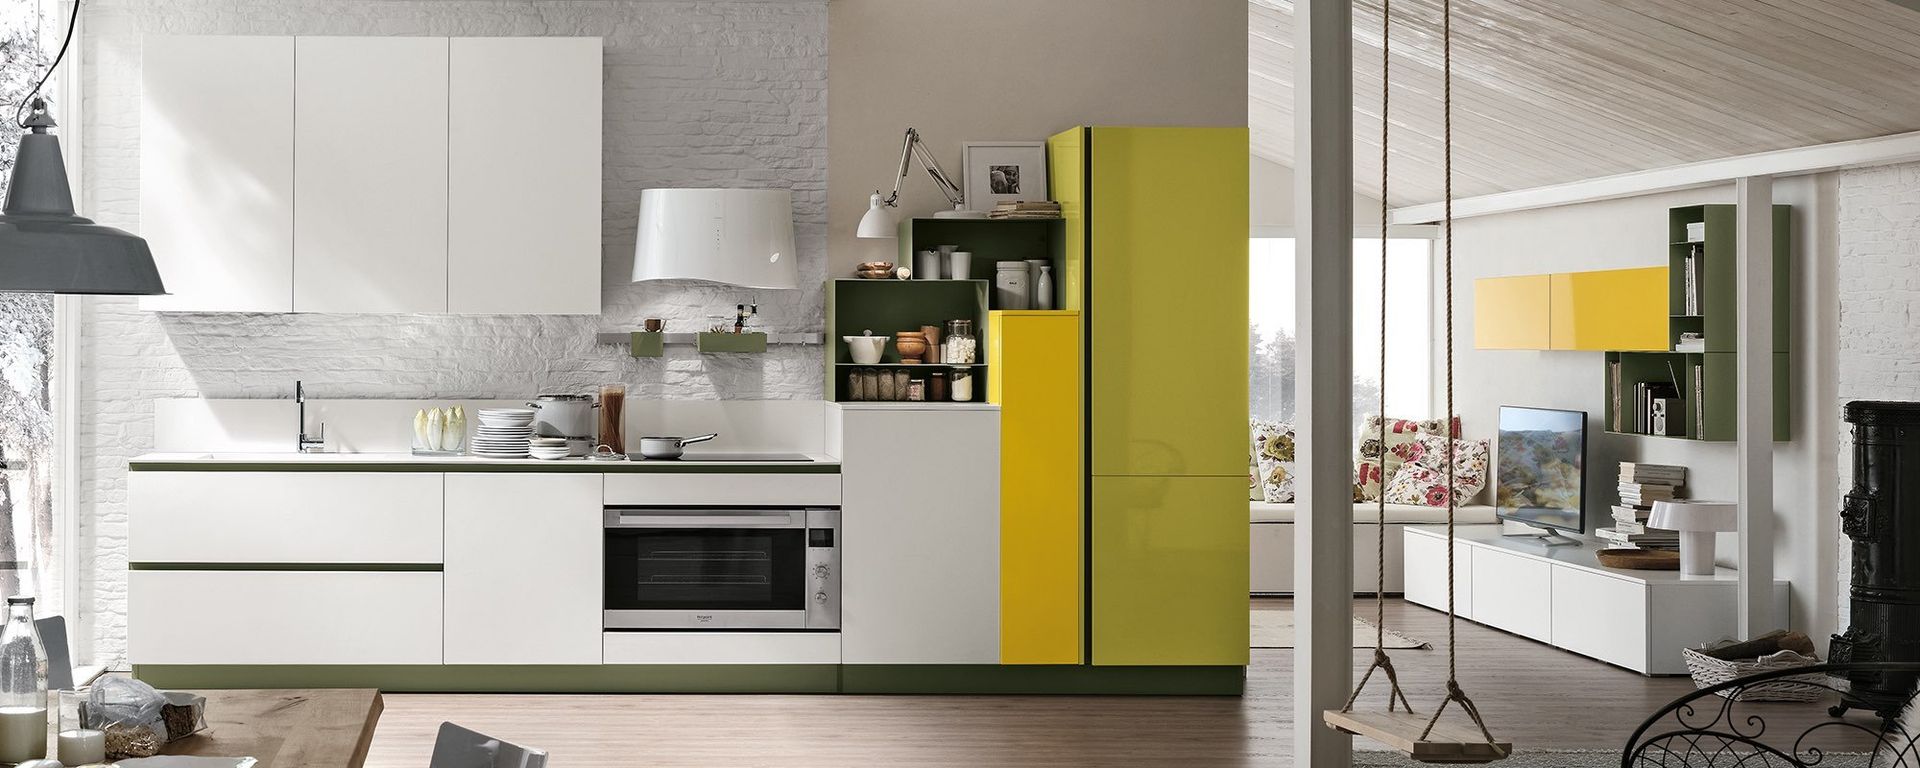 cucina malaga bianca con frigorifero giallo